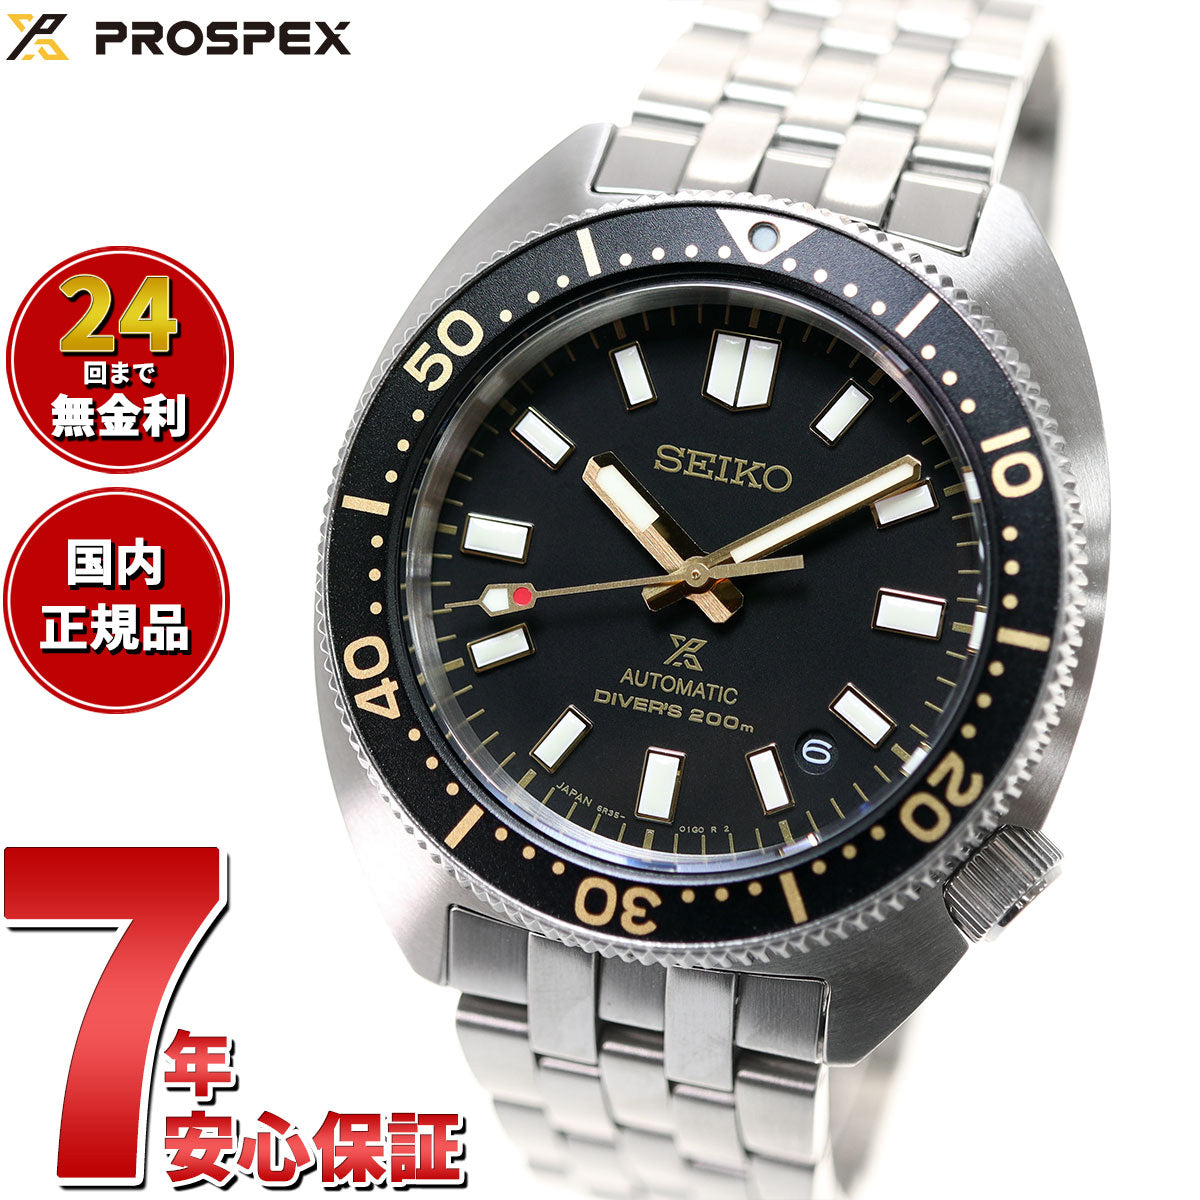 セイコー SEIKO 腕時計 メンズ SBDC173 プロスペックス ダイバースキューバ メカニカル DIVER SCUBA 自動巻き（6R35/手巻付き） ブラックxシルバー アナログ表示